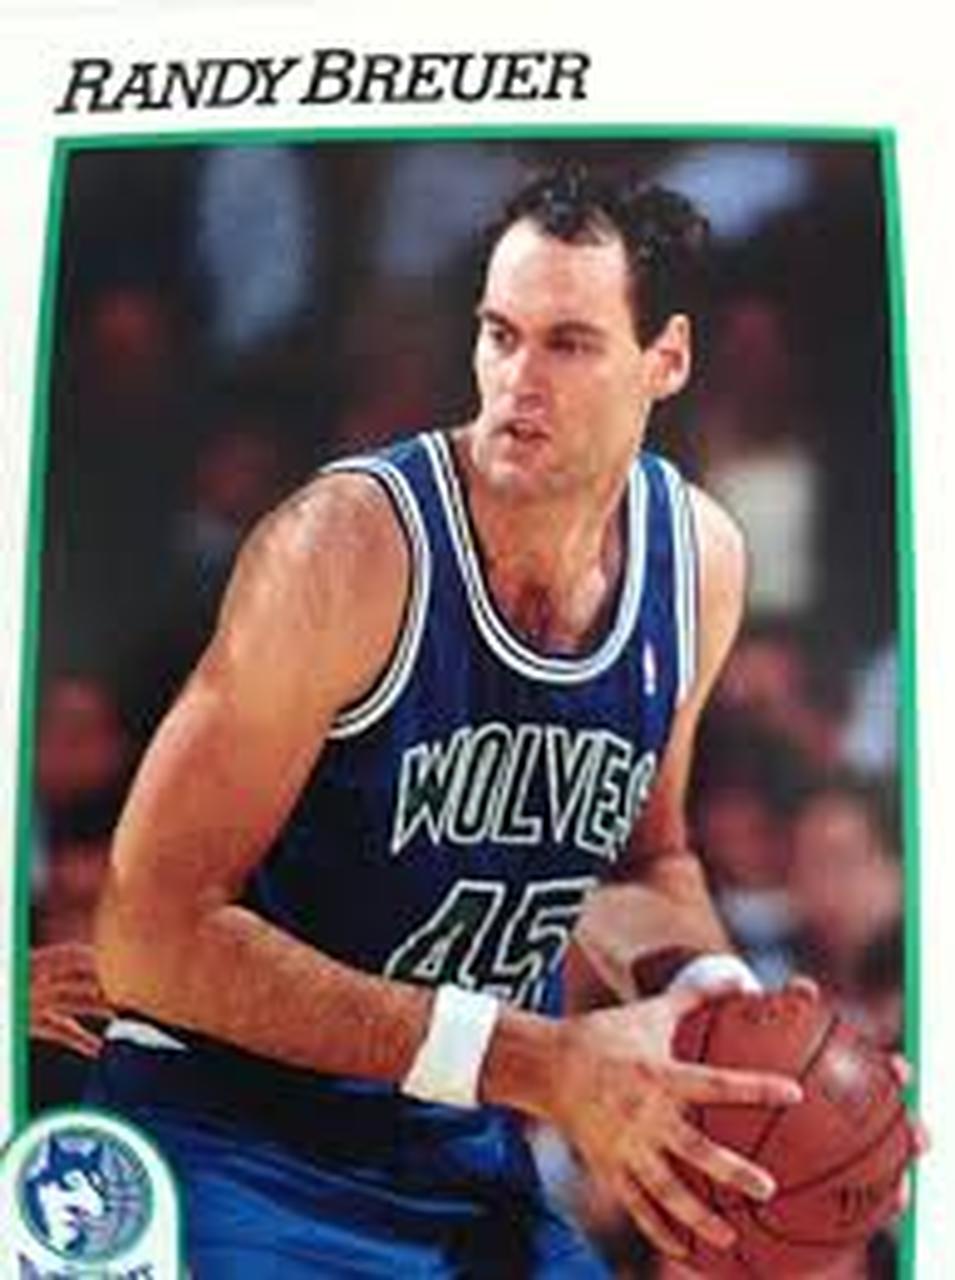 16- Randy Brewer (2,21 metros) - O pivô jogou na NBA entre 1983 e 1993, com passagens por Milwaukee Bucks, Minnesota Timberwolves, Atlanta Hawks e Sacramento Kings. Ele finalizou sua carreira com médias de 6.8 pontos, 4.4 rebotes e 1.1 bloqueio em 681 jogos